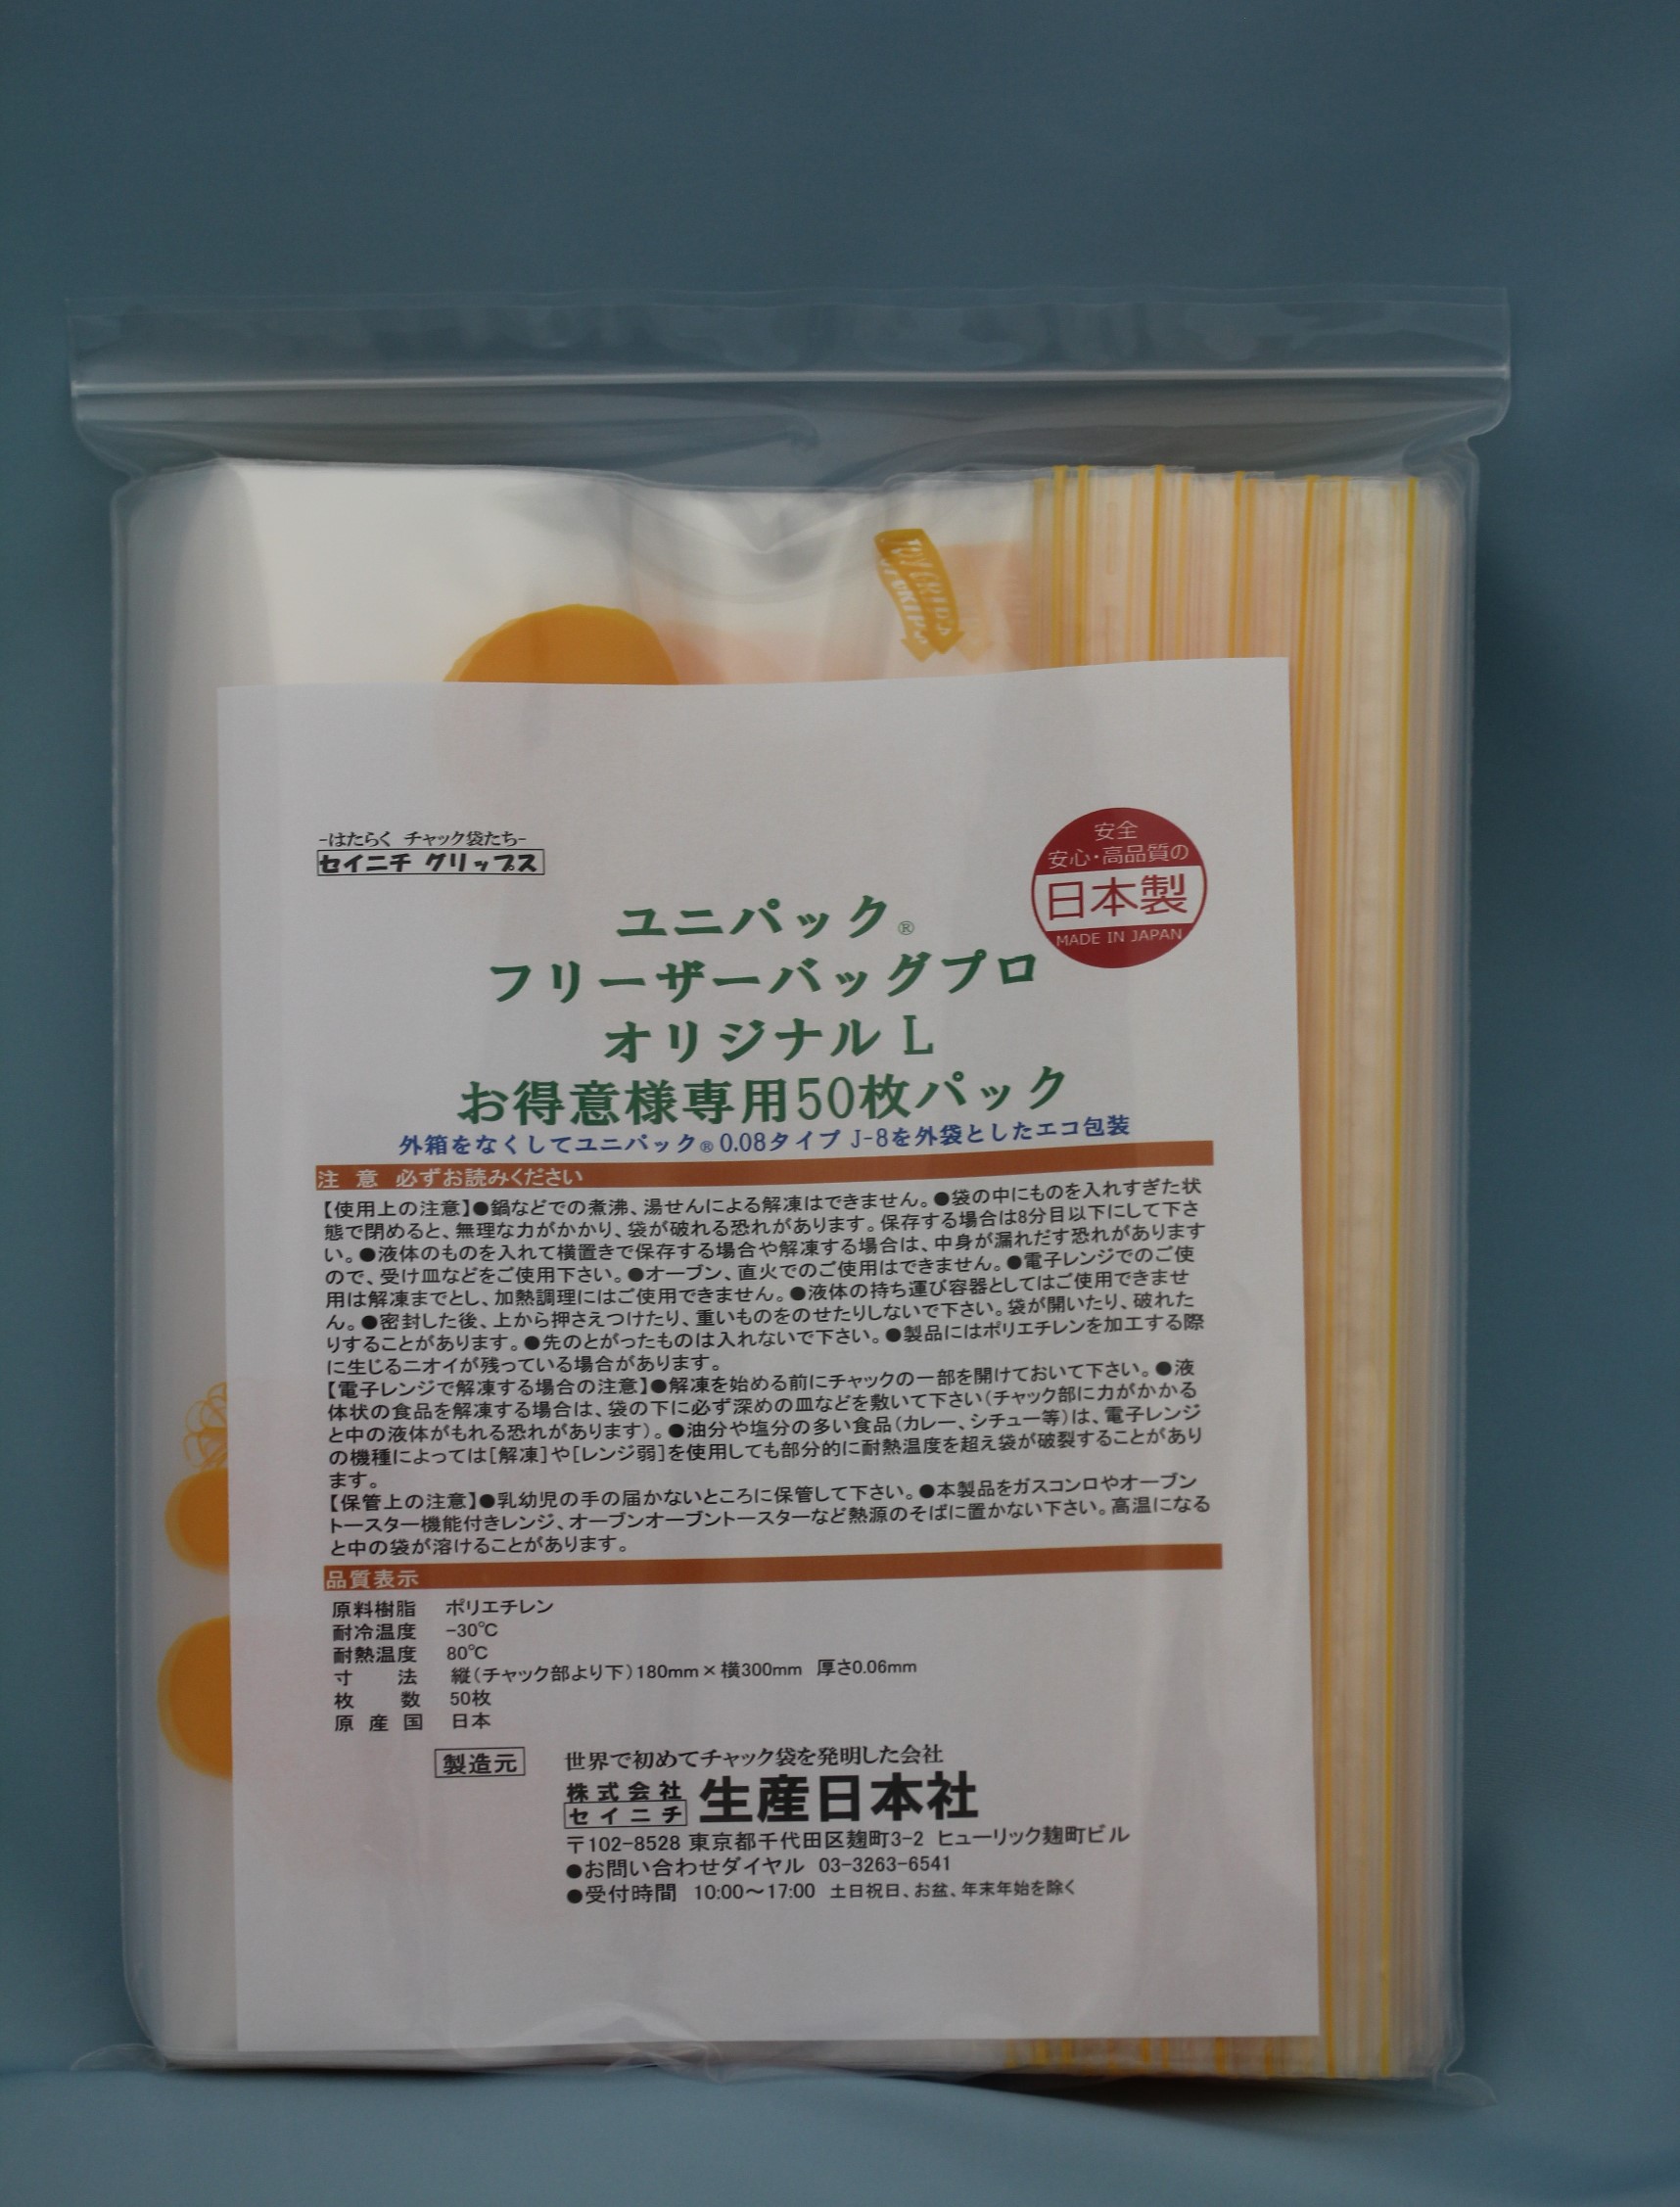 訳あり 日本製フリーザーバッグ 安心 安全 の袋で食材をおいしく保存 供え 日本製 フリーザーバッグ シトラス お得意様専用 Ｌ チャック付ポリ袋 50枚 パック 保存袋